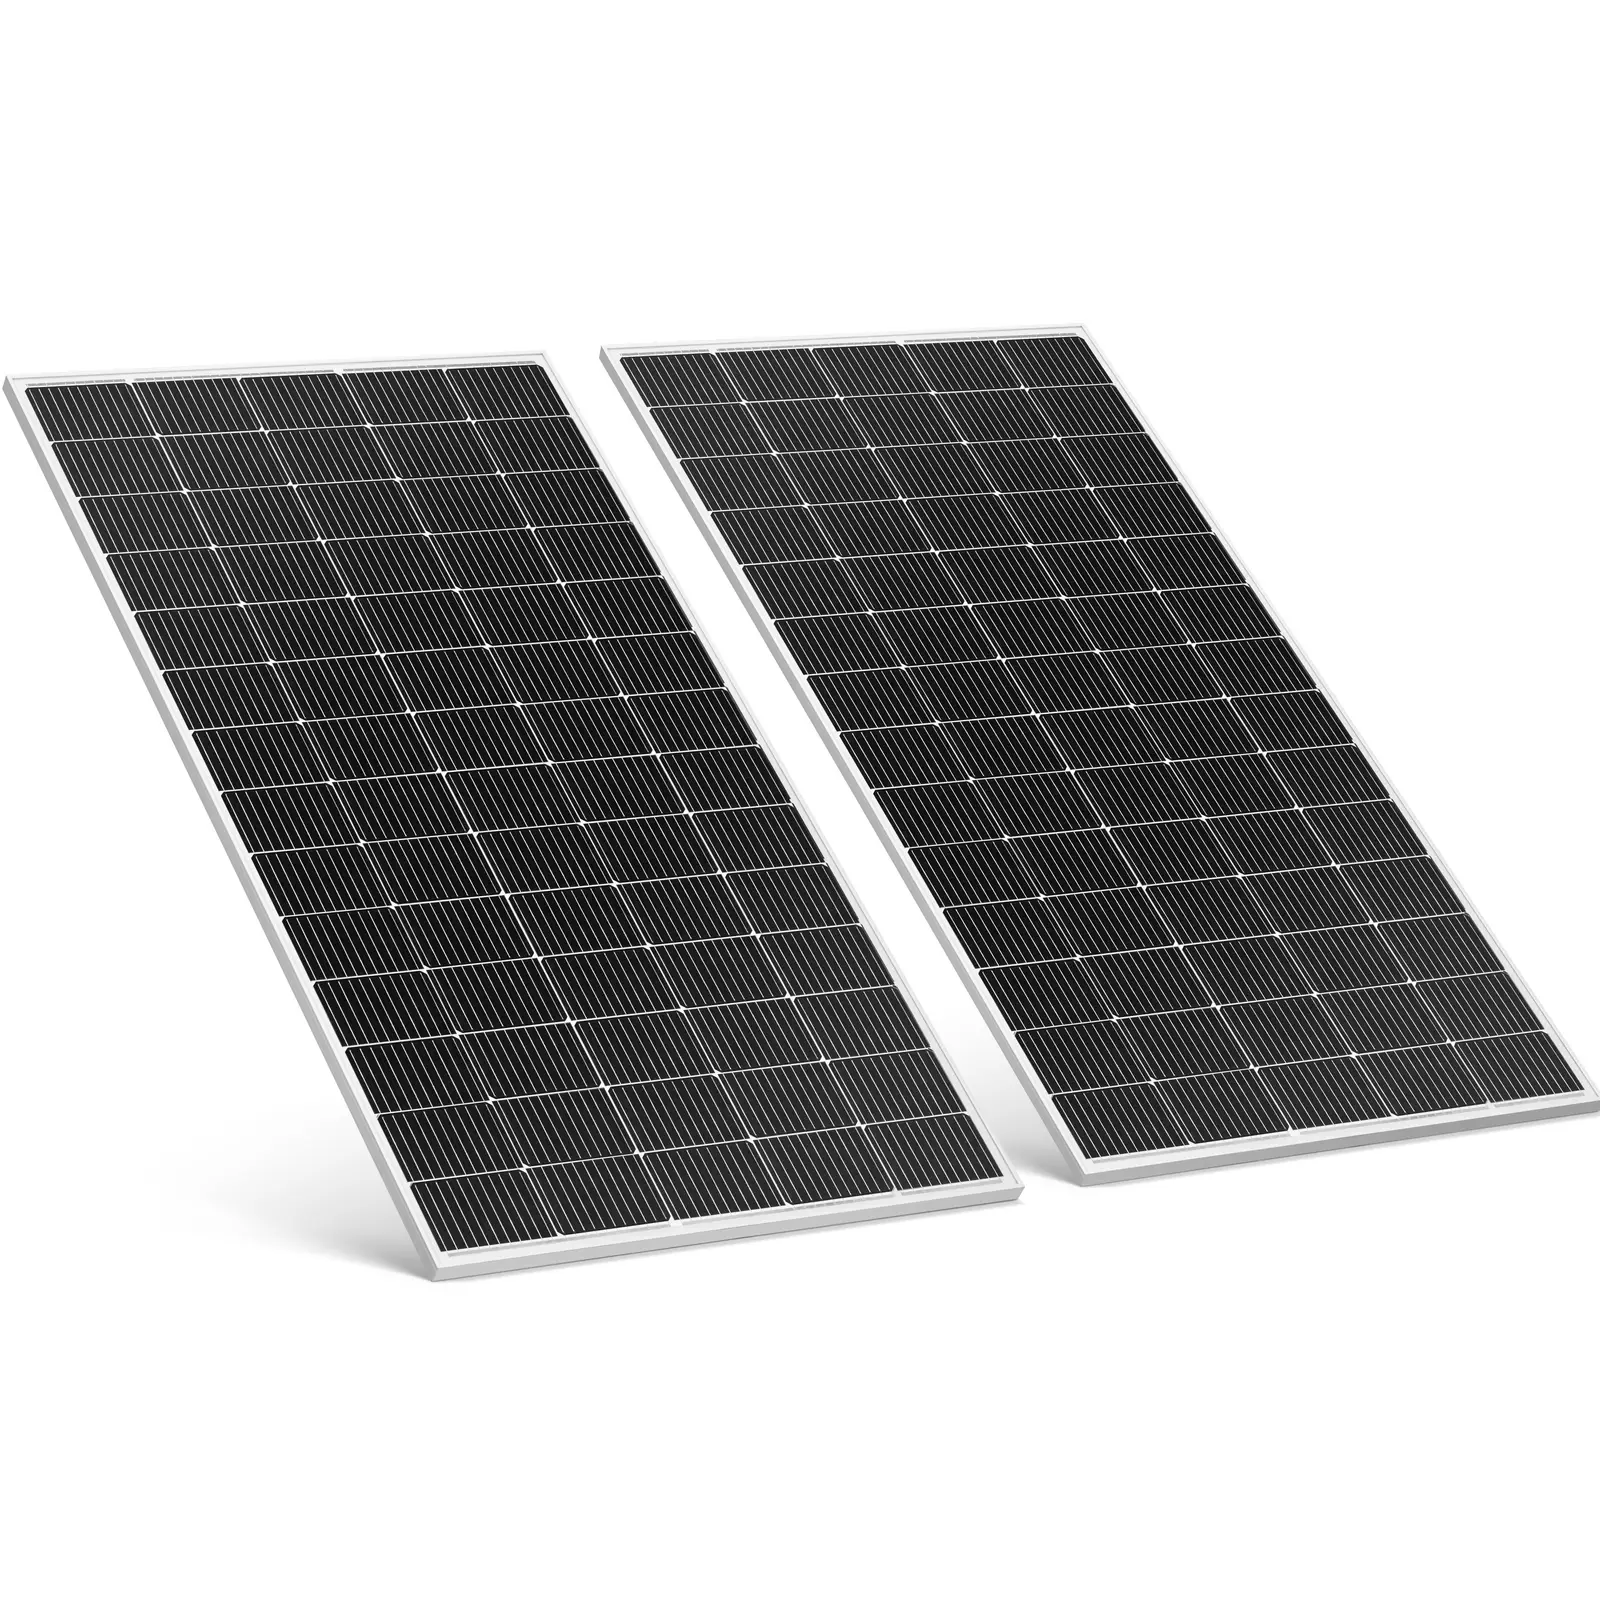 Panneau solaire pour balcon – 600 W – 2 panneaux monocristallins – Kit complet prêt à brancher